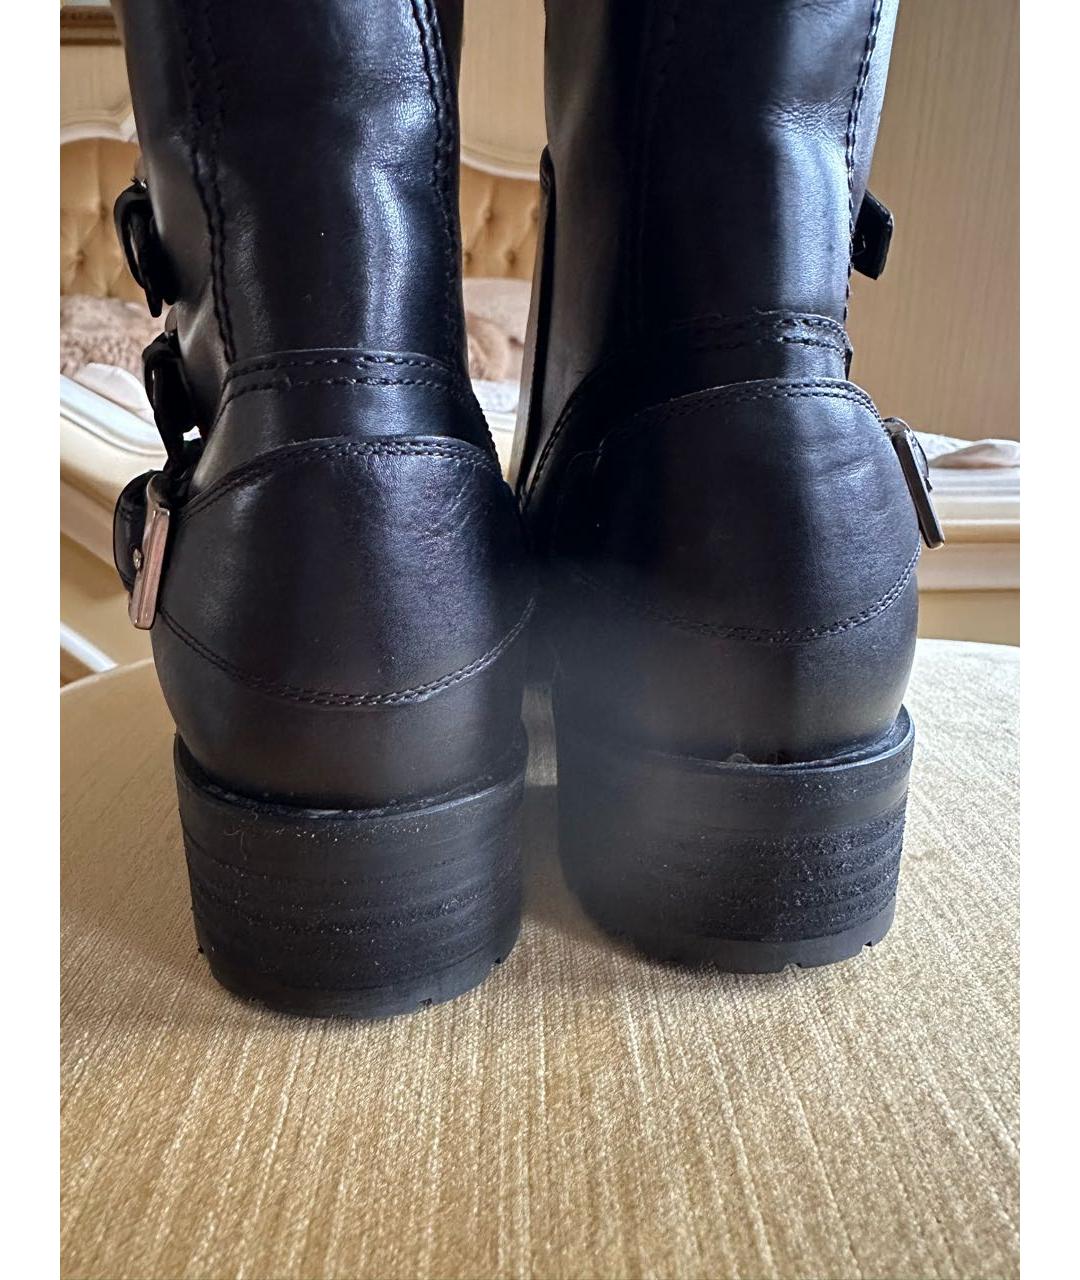 Ботинки MIU MIU для женщин купить за 19000 руб, арт. 1471294 –Интернет-магазин Oskelly